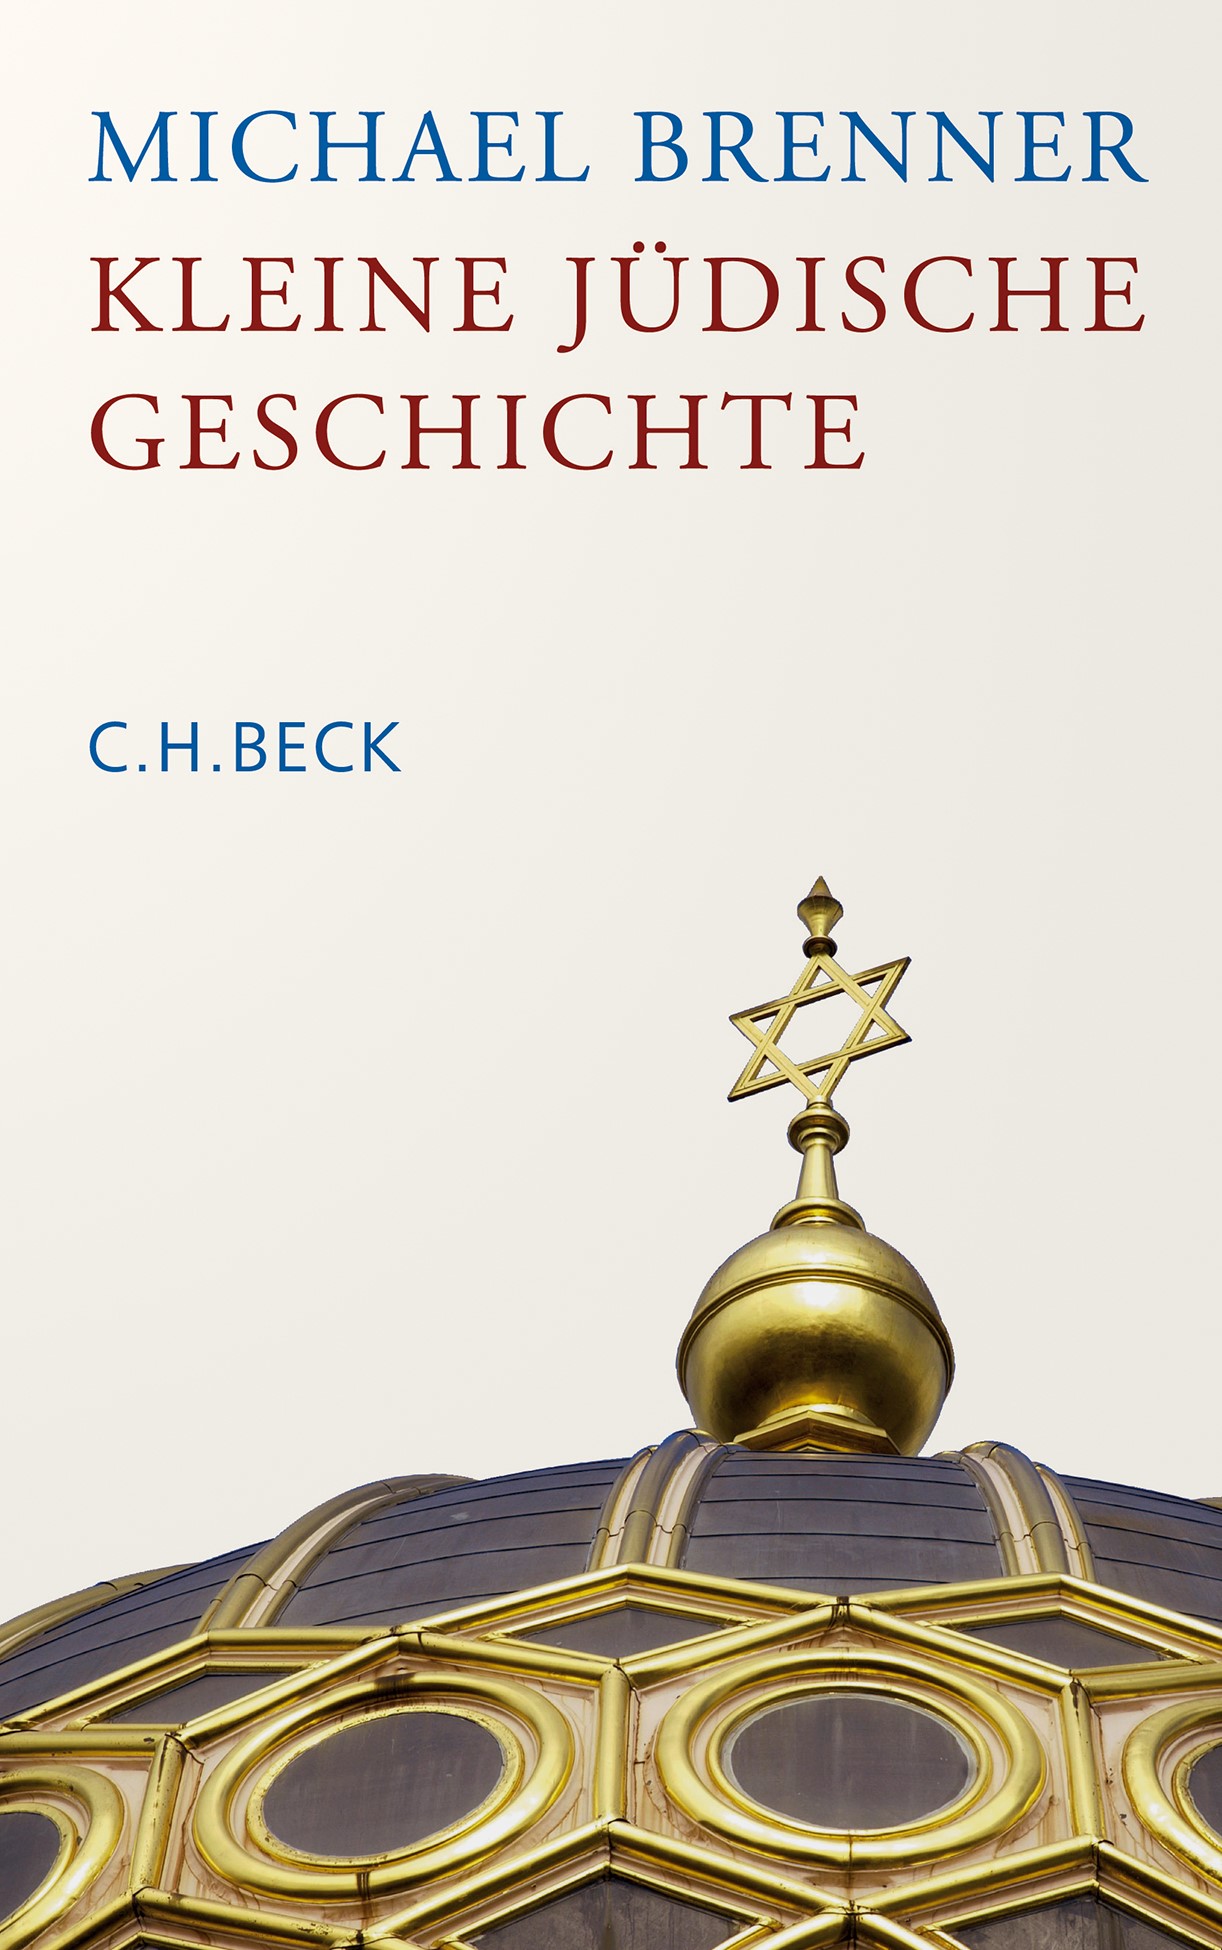 Cover: Brenner, Michael, Kleine jüdische Geschichte